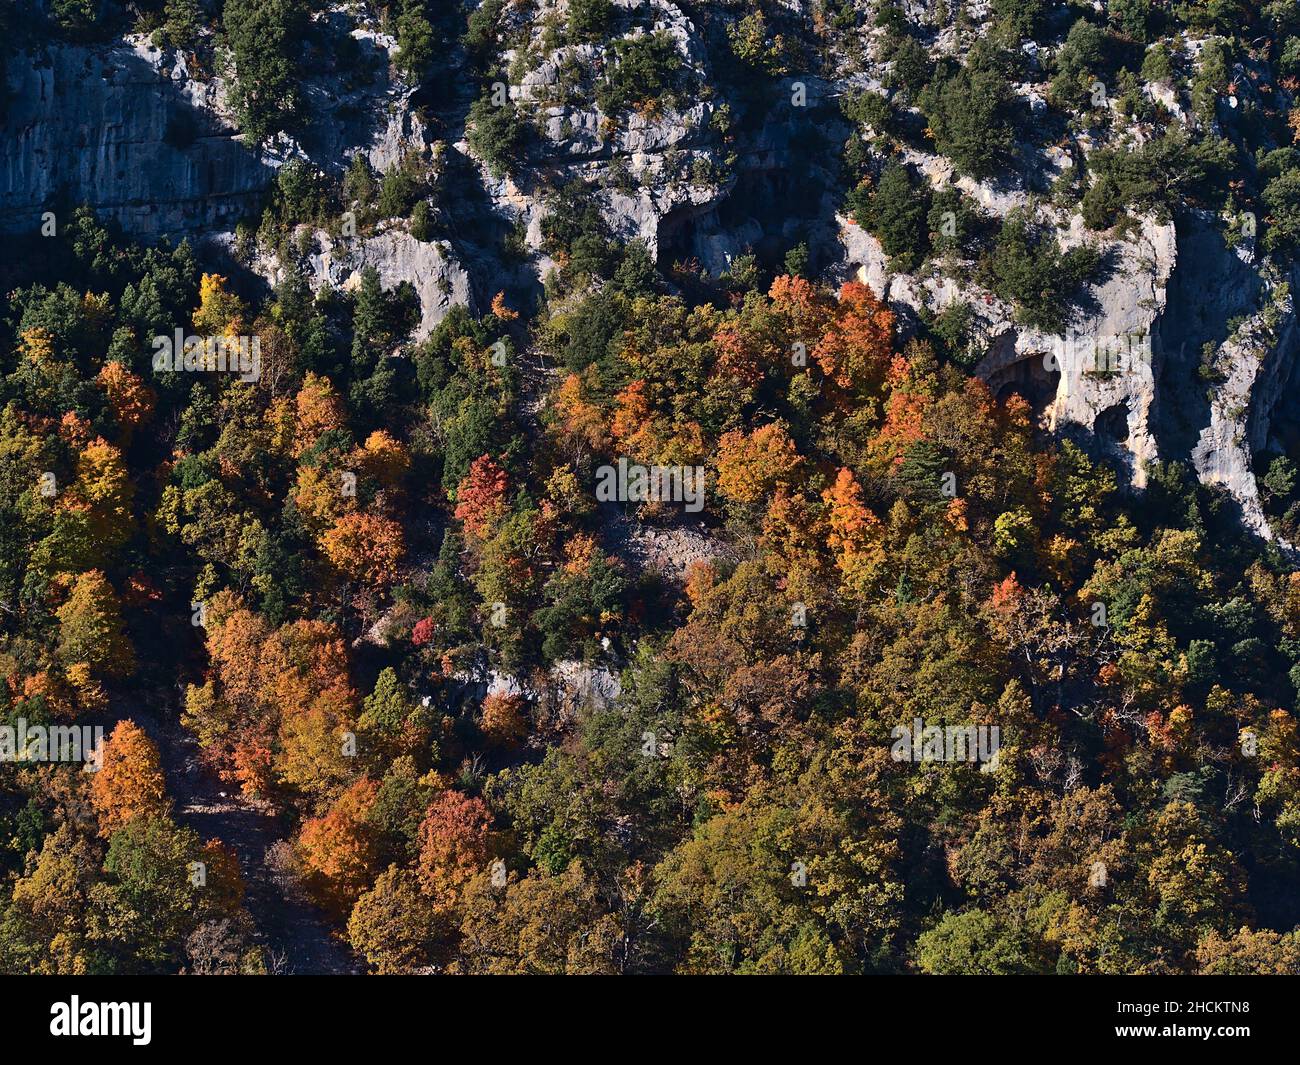 Splendida vista sul ripido pendio della maestosa gola del Verdon (Gorges du Verdon) nella regione della Provenza nel sud della Francia in autunno stagione. Foto Stock